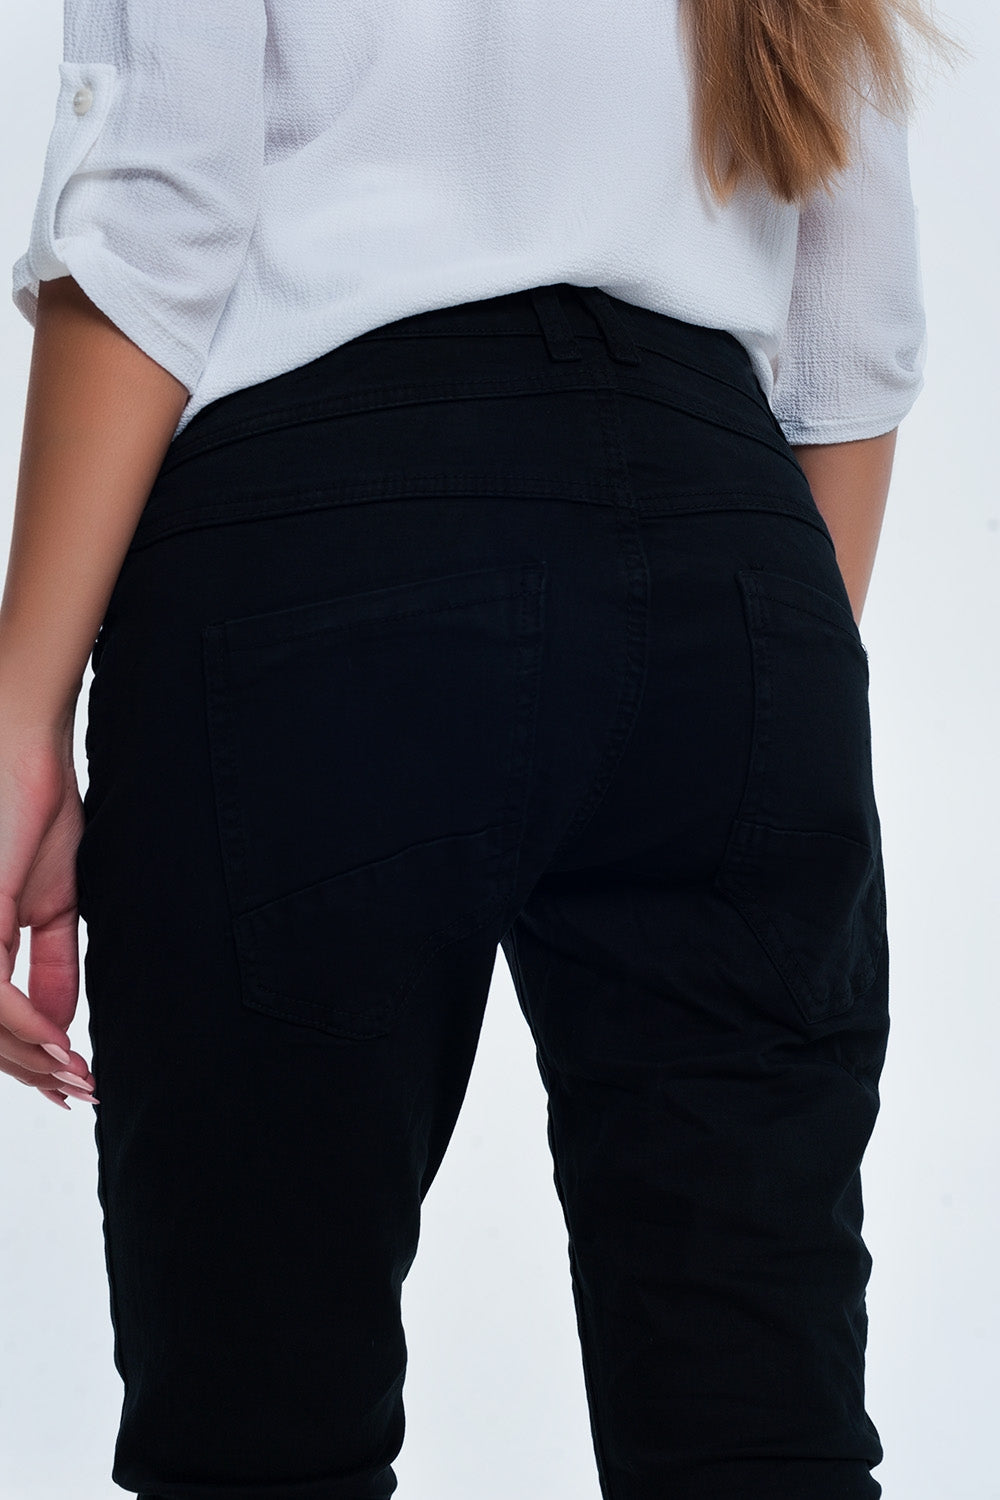 Drop crotch skinny jean in blackJeans